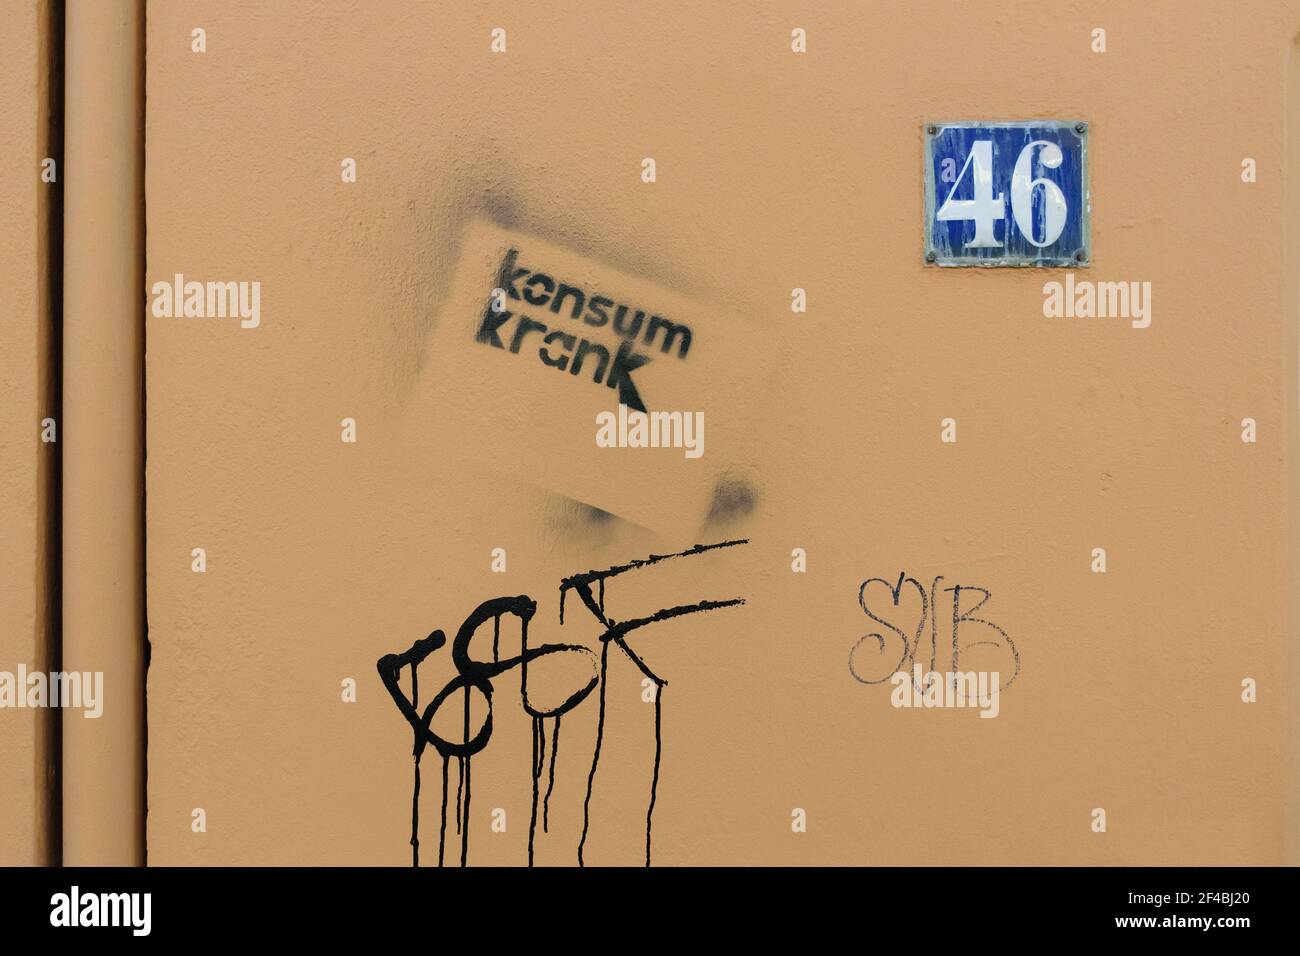 Graffiti stencil - consommation malade (krank konsum) - sur un mur de maison peint beige avec le numéro de maison 46, Hambourg, Allemagne. Banque D'Images